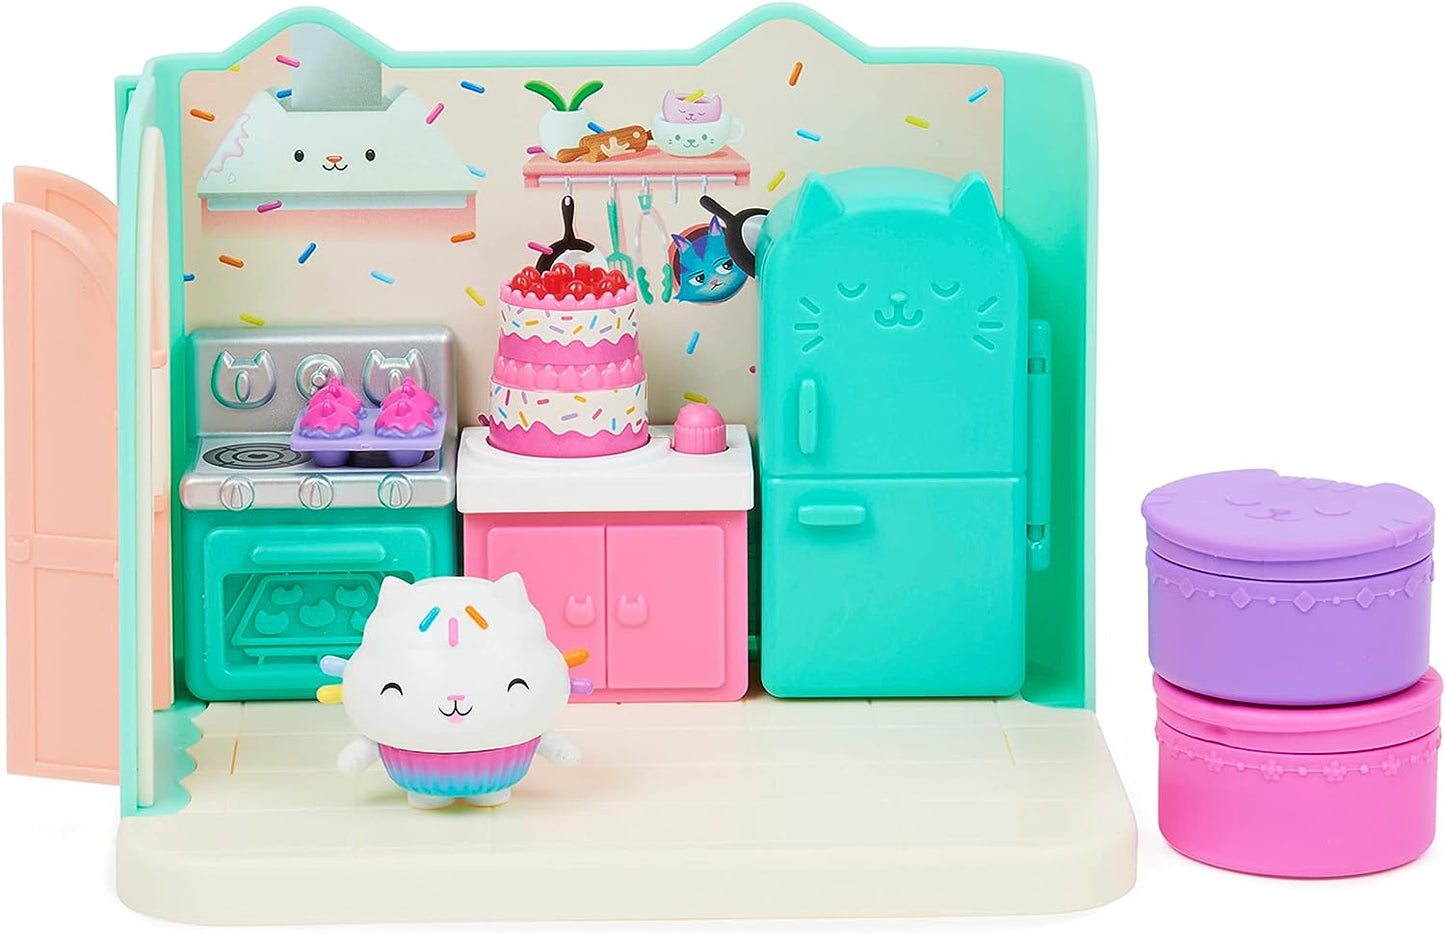 Gabby’s Dollhouse Bakey com Cakey Kitchen com figura e 3 acessórios, 3 móveis e 2 entregas, brinquedos infantis para maiores de 3 anos